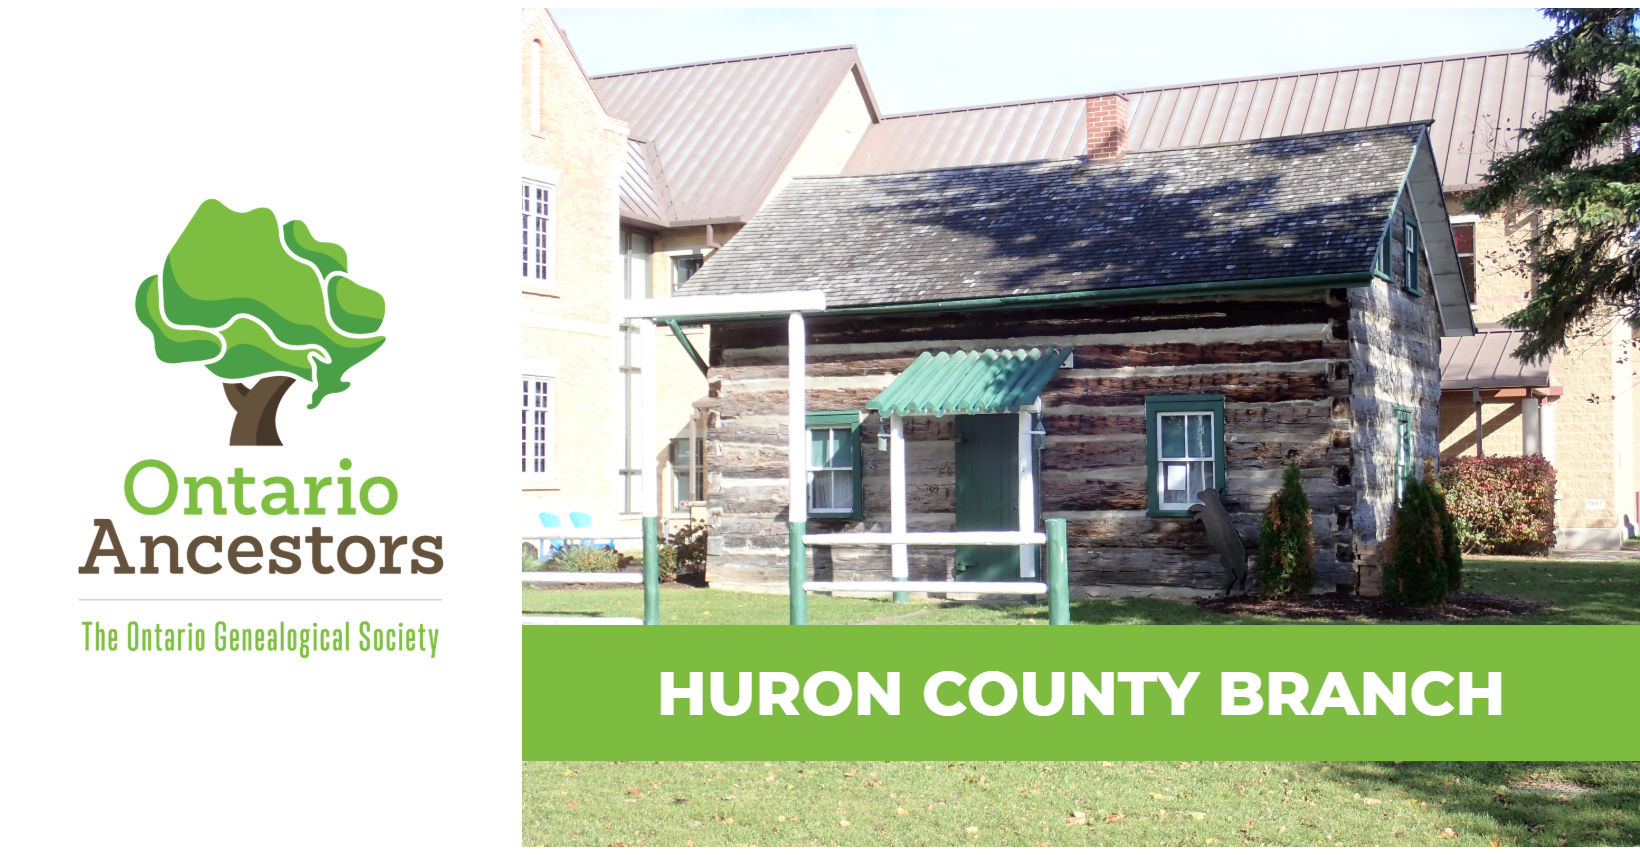 Huron County Branch of Ontario Ancestors